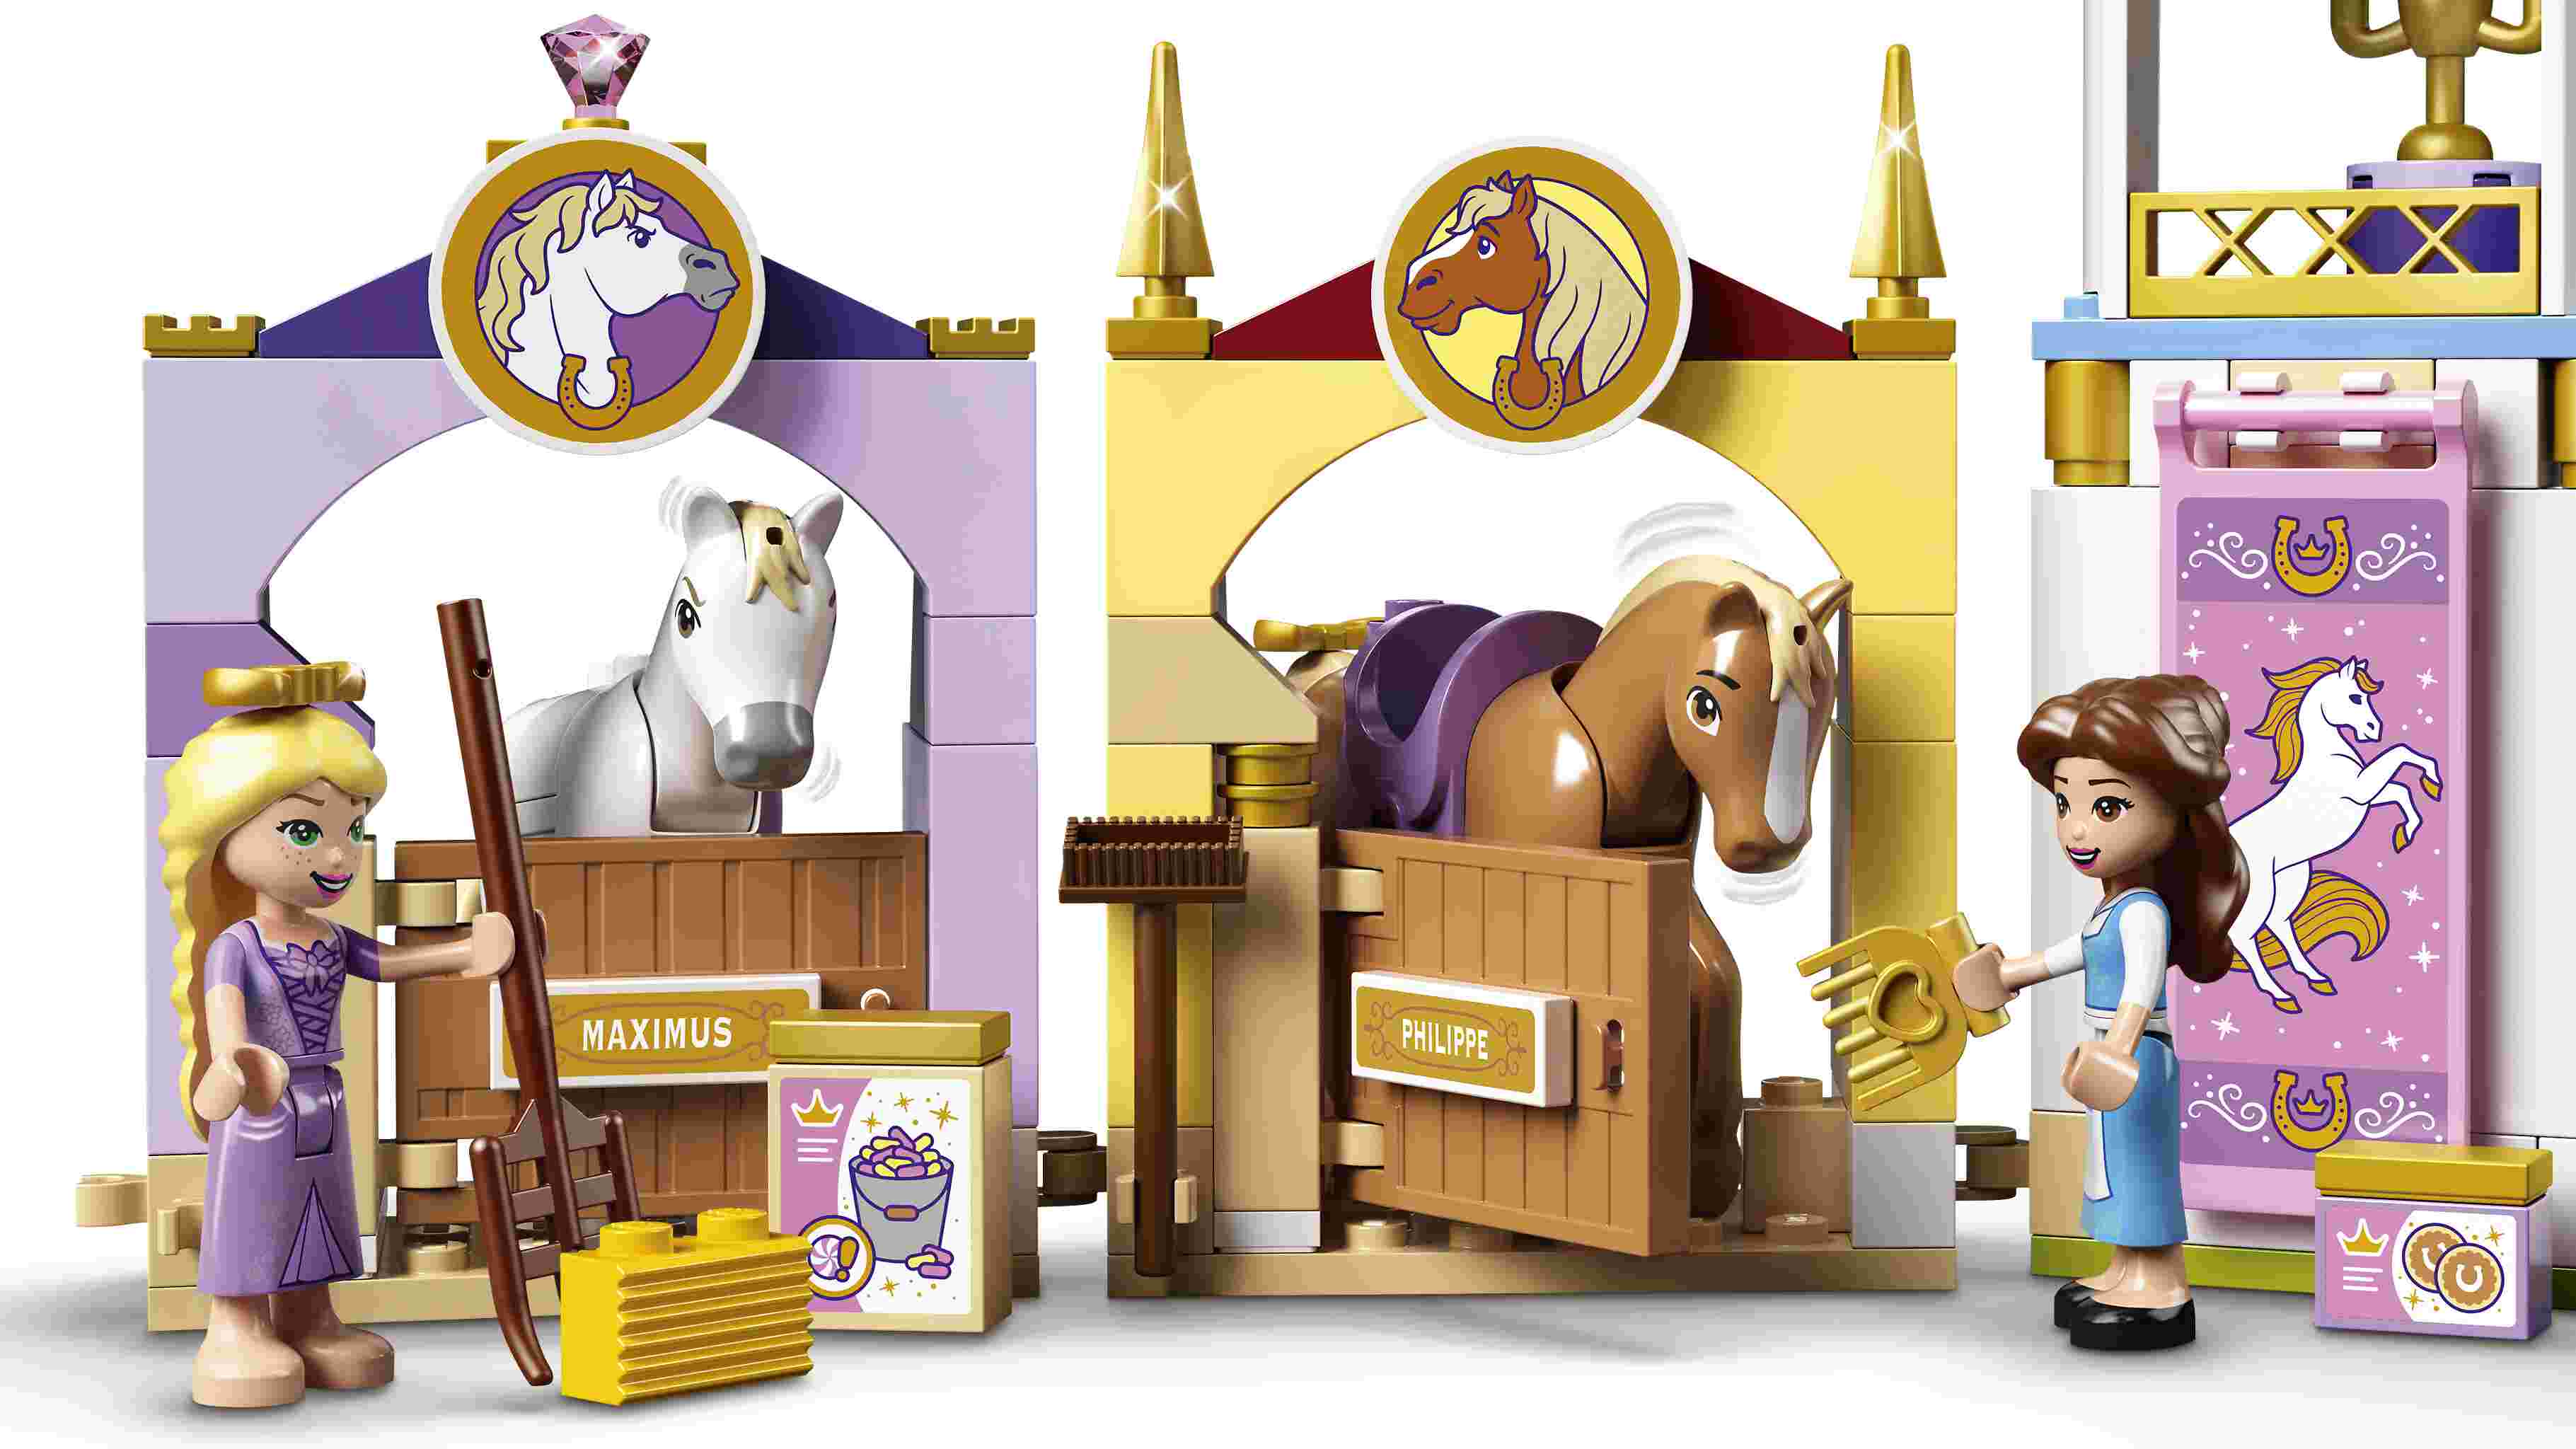 LEGO 43195 Disney Princess Belles und Rapunzels königliche Ställe, mit Pferden